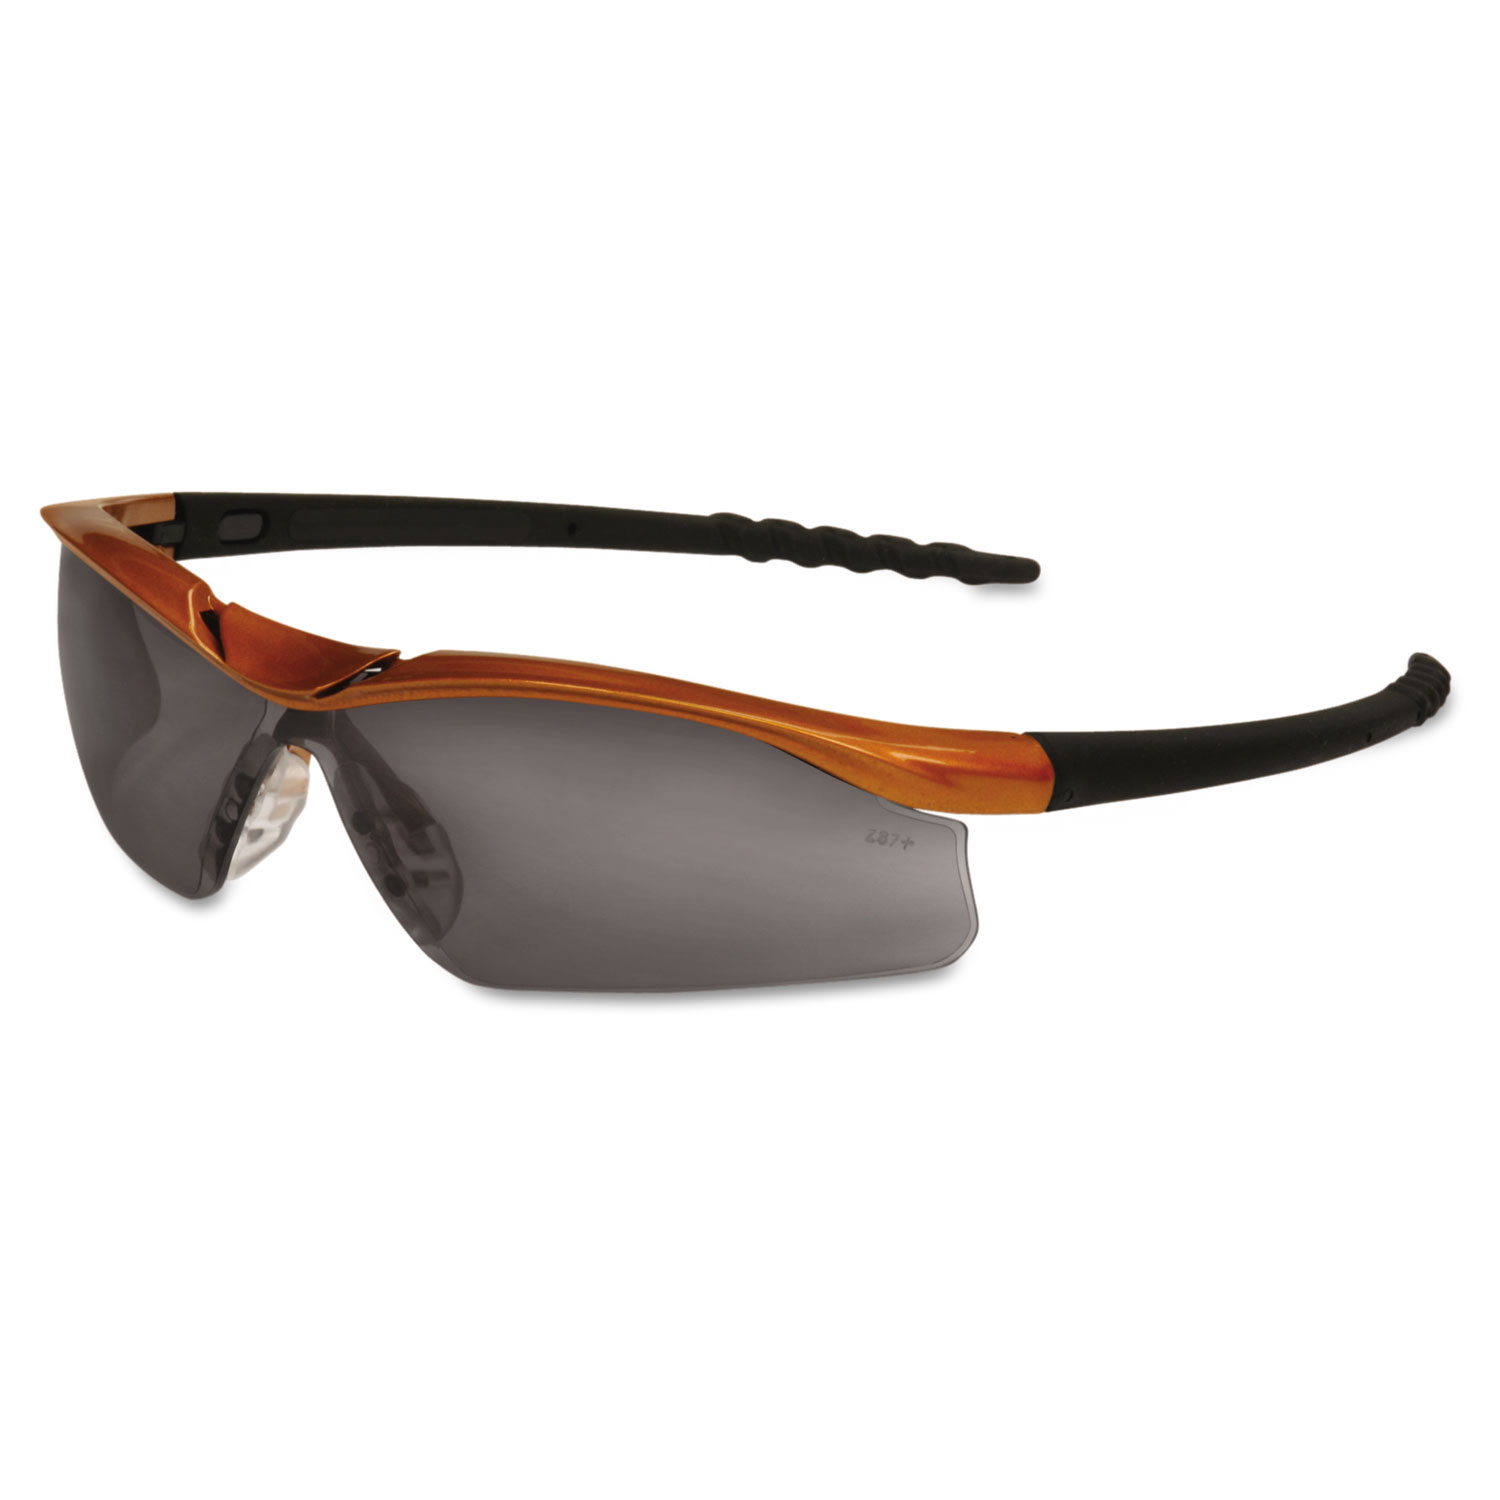  MCR Safety DL212AF Dallas Wraparound Safety Glasses, Orange Frame, Gray AntiFog Lens (CRWDL212AF) 